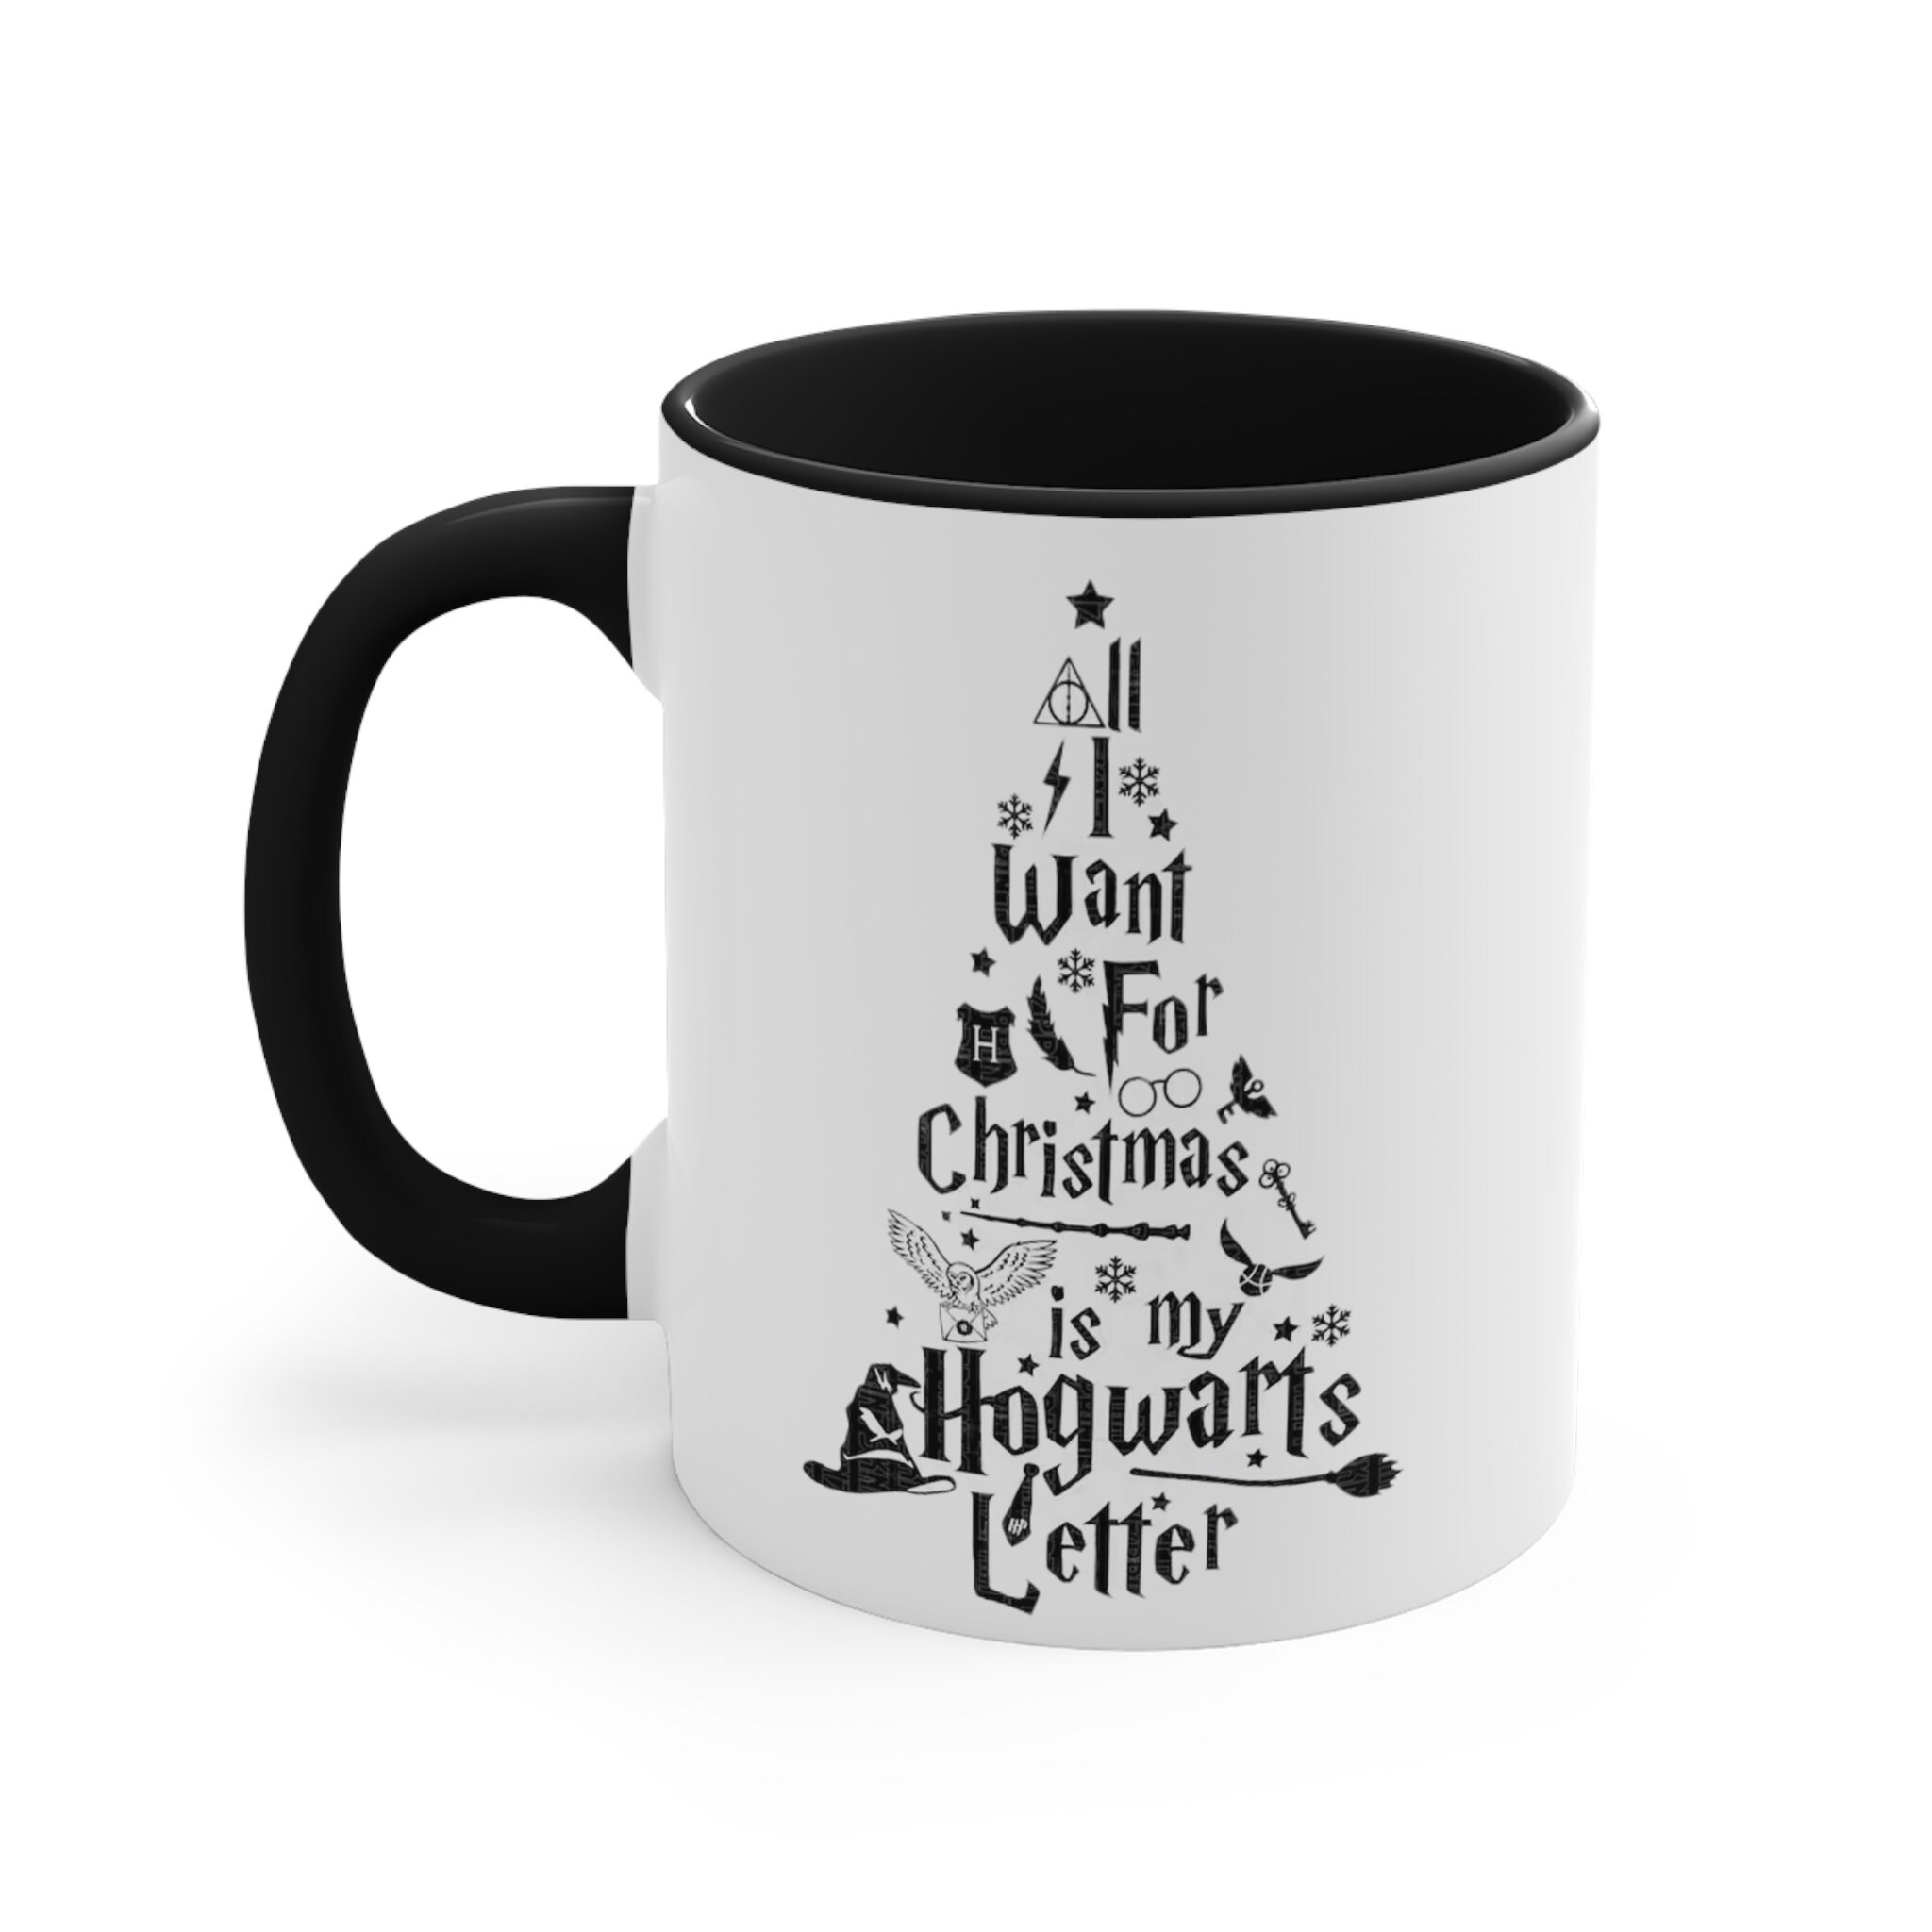 Potter Christmas Mug 